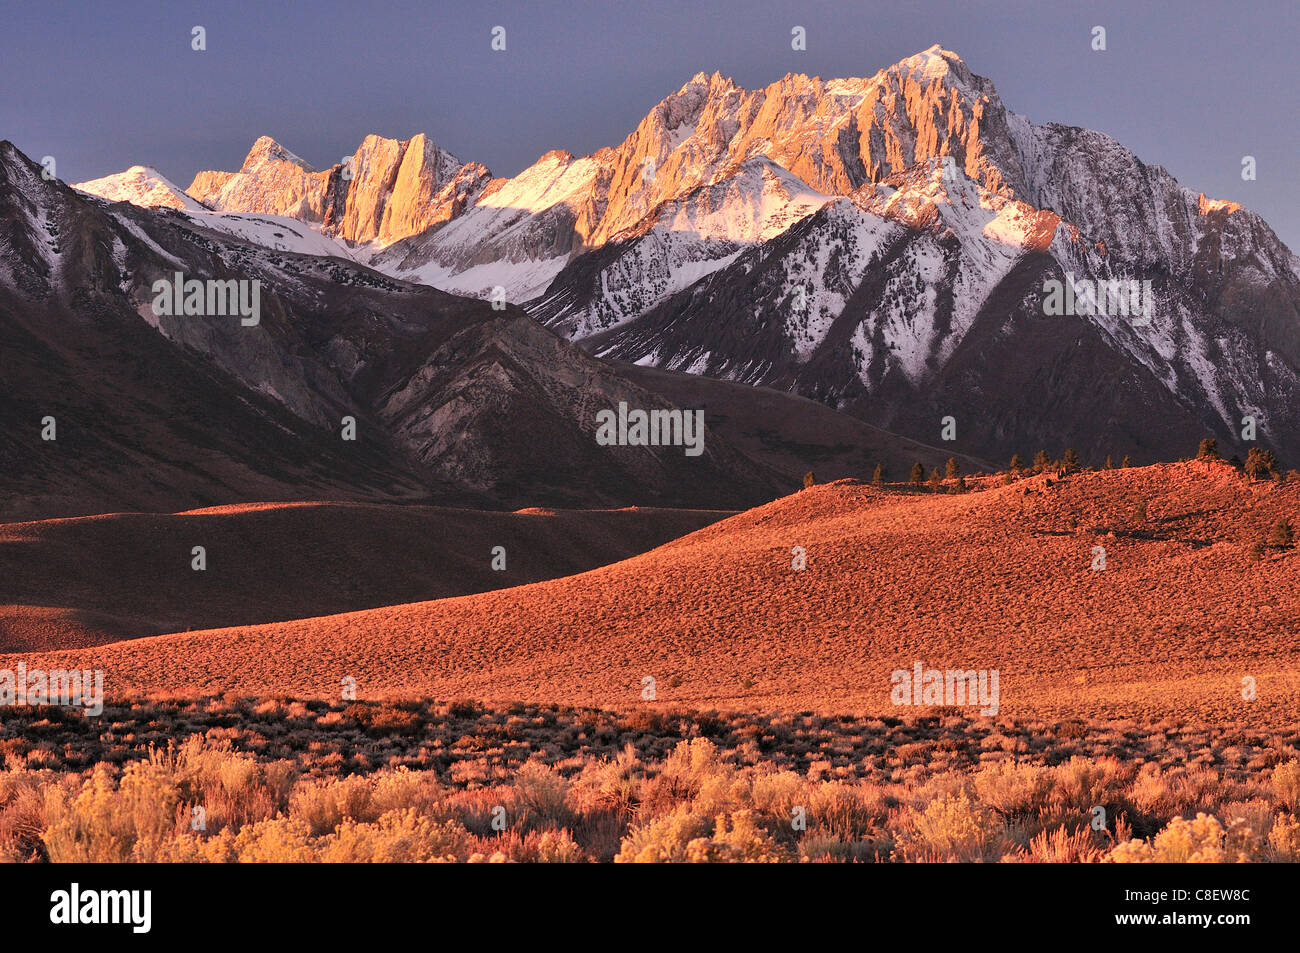 Sierra Nevada, montañas, lagos, Bucle de junio cerca de Lee Vining, California, USA, Estados Unidos, América, sunset Foto de stock